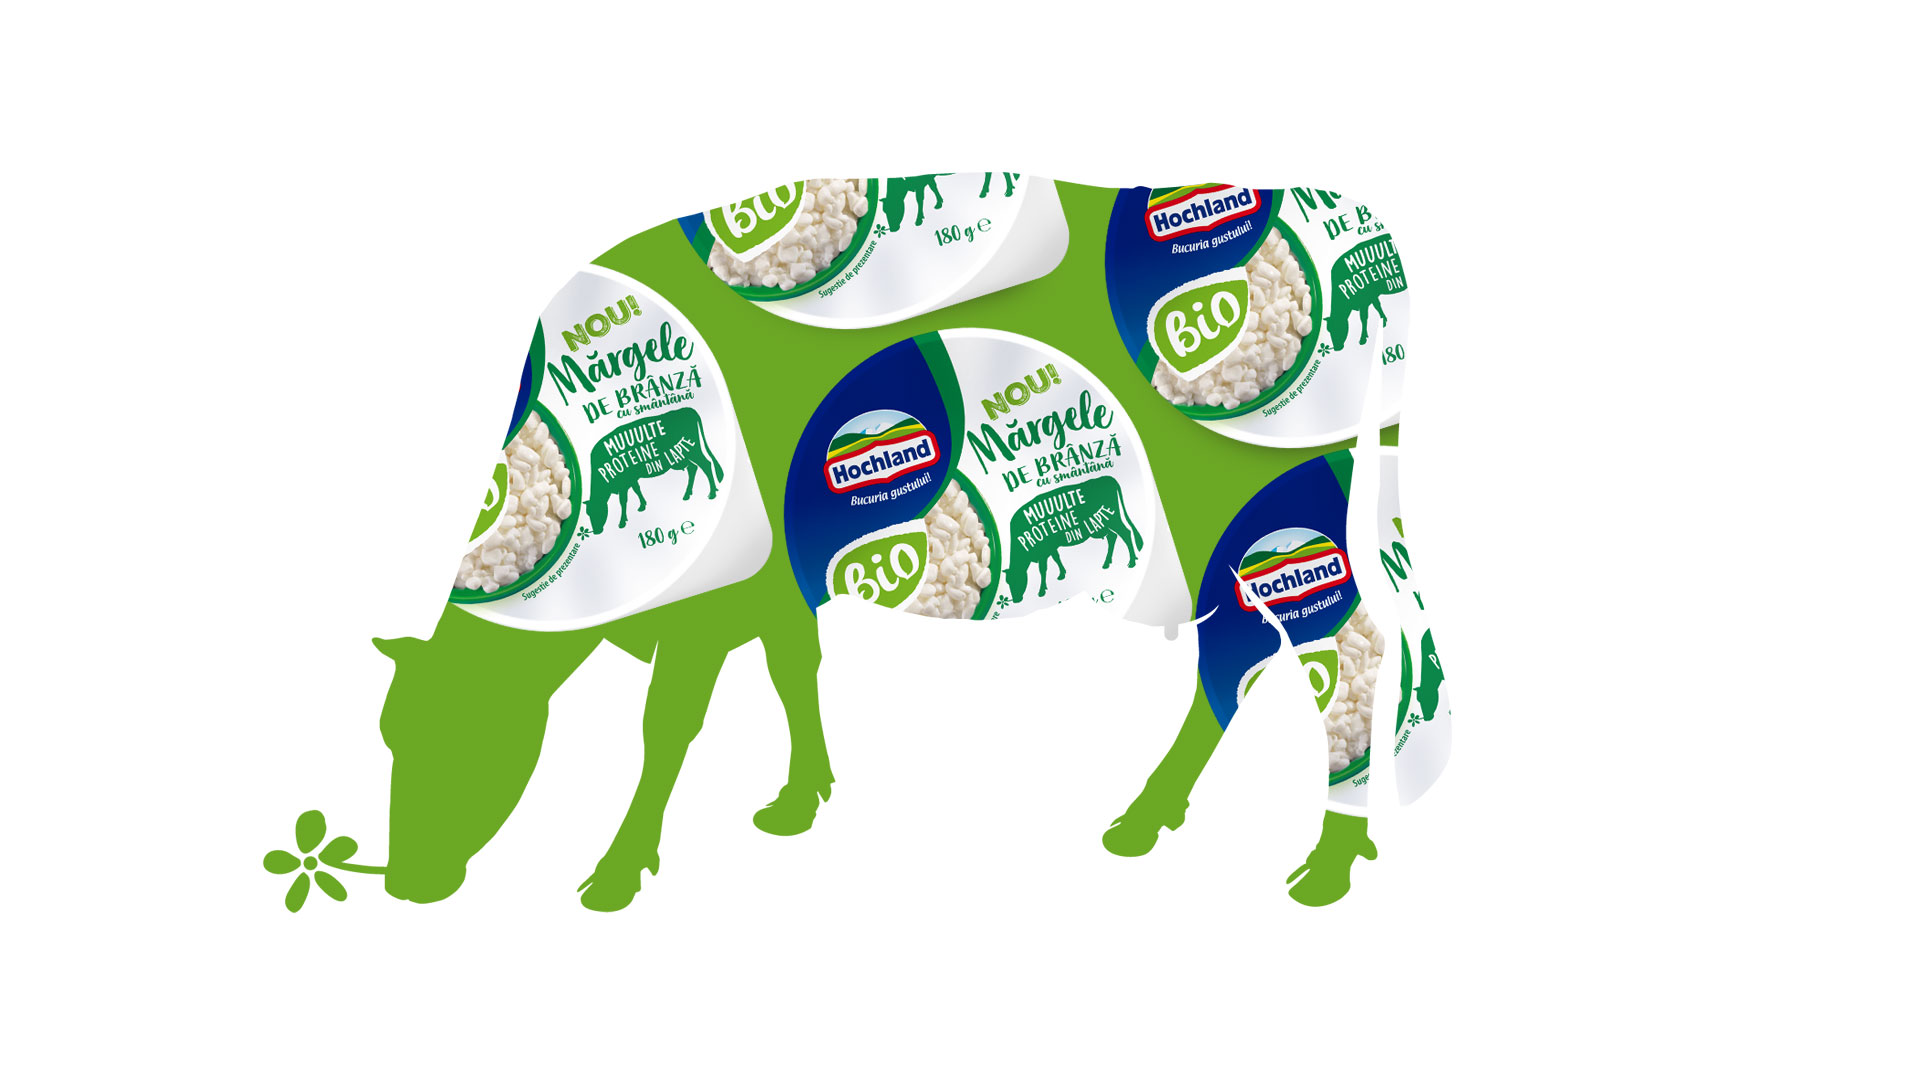 Świat marki Hochland Mărgele de brânză - ilustracja krowy składająca się z design opakowań serów.